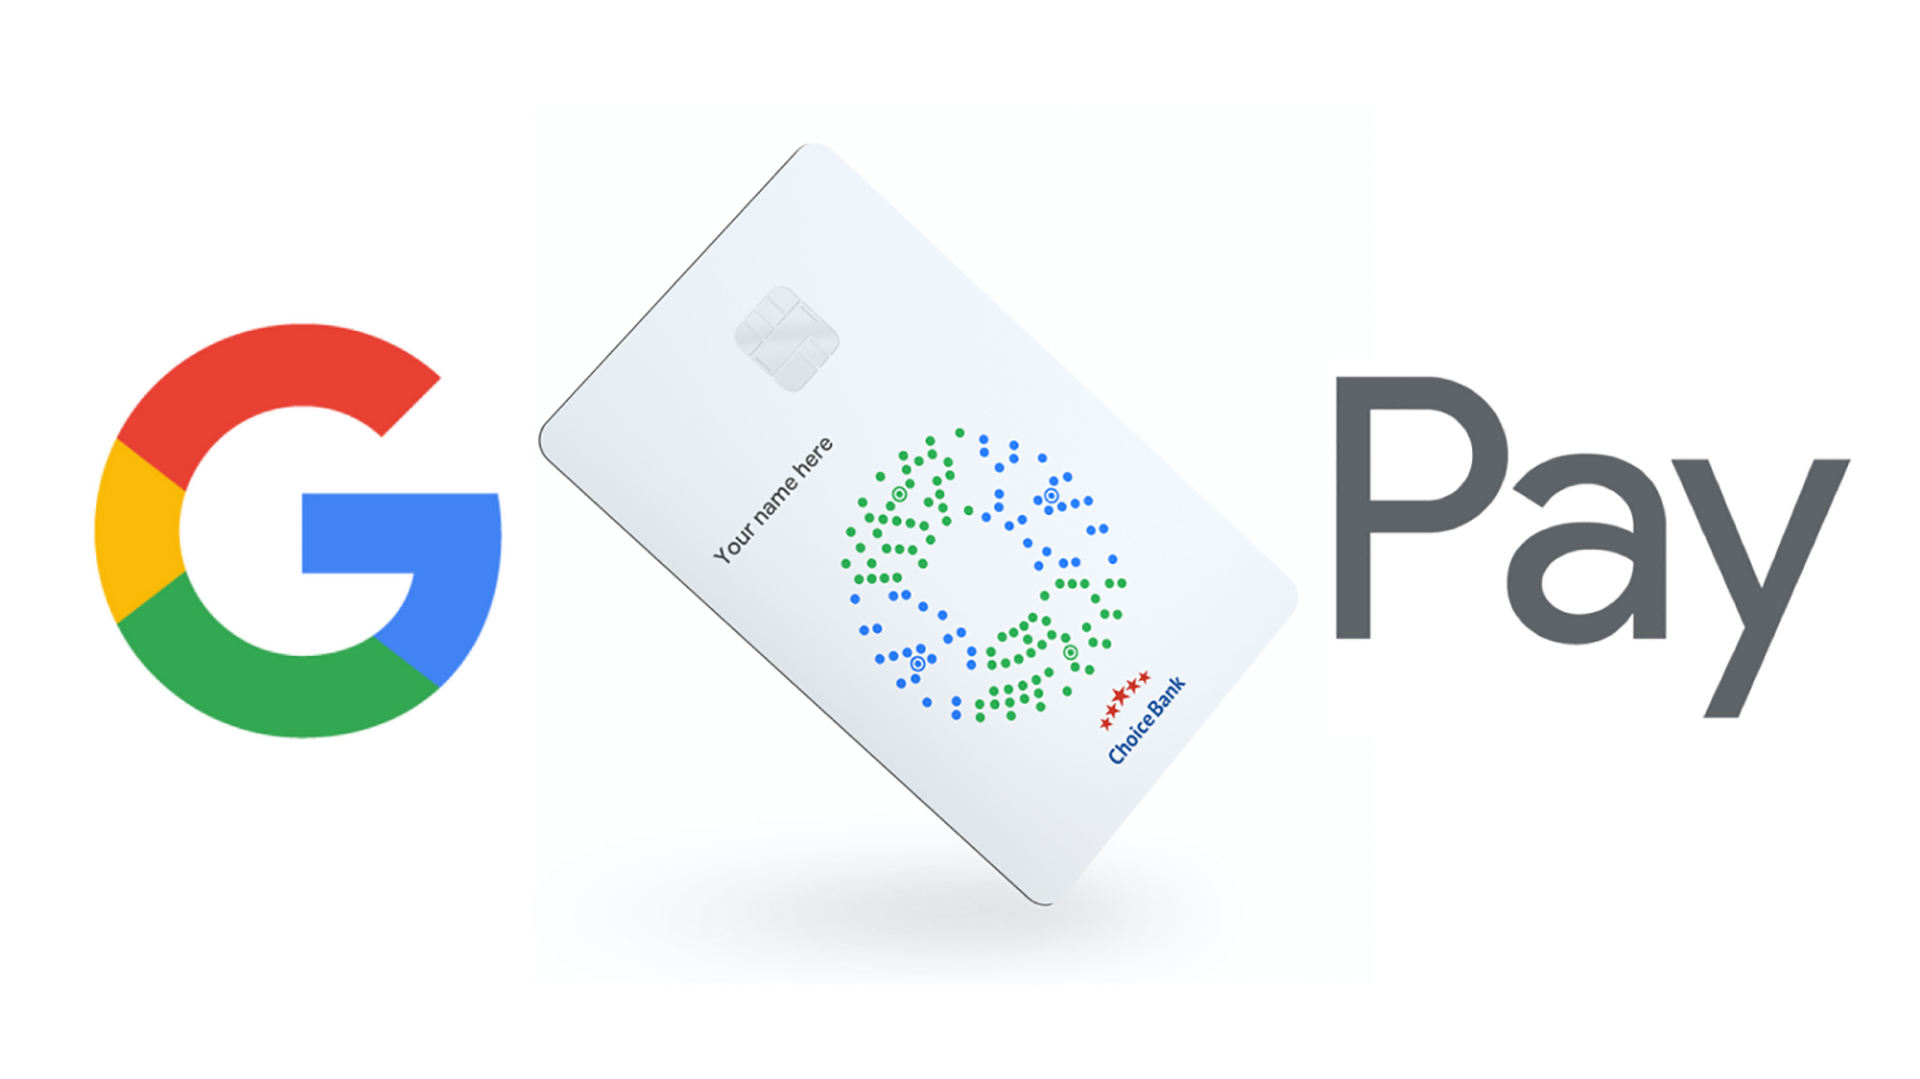 Google возможно выпустят дебетовую карту Google Pay на подобии Wallet